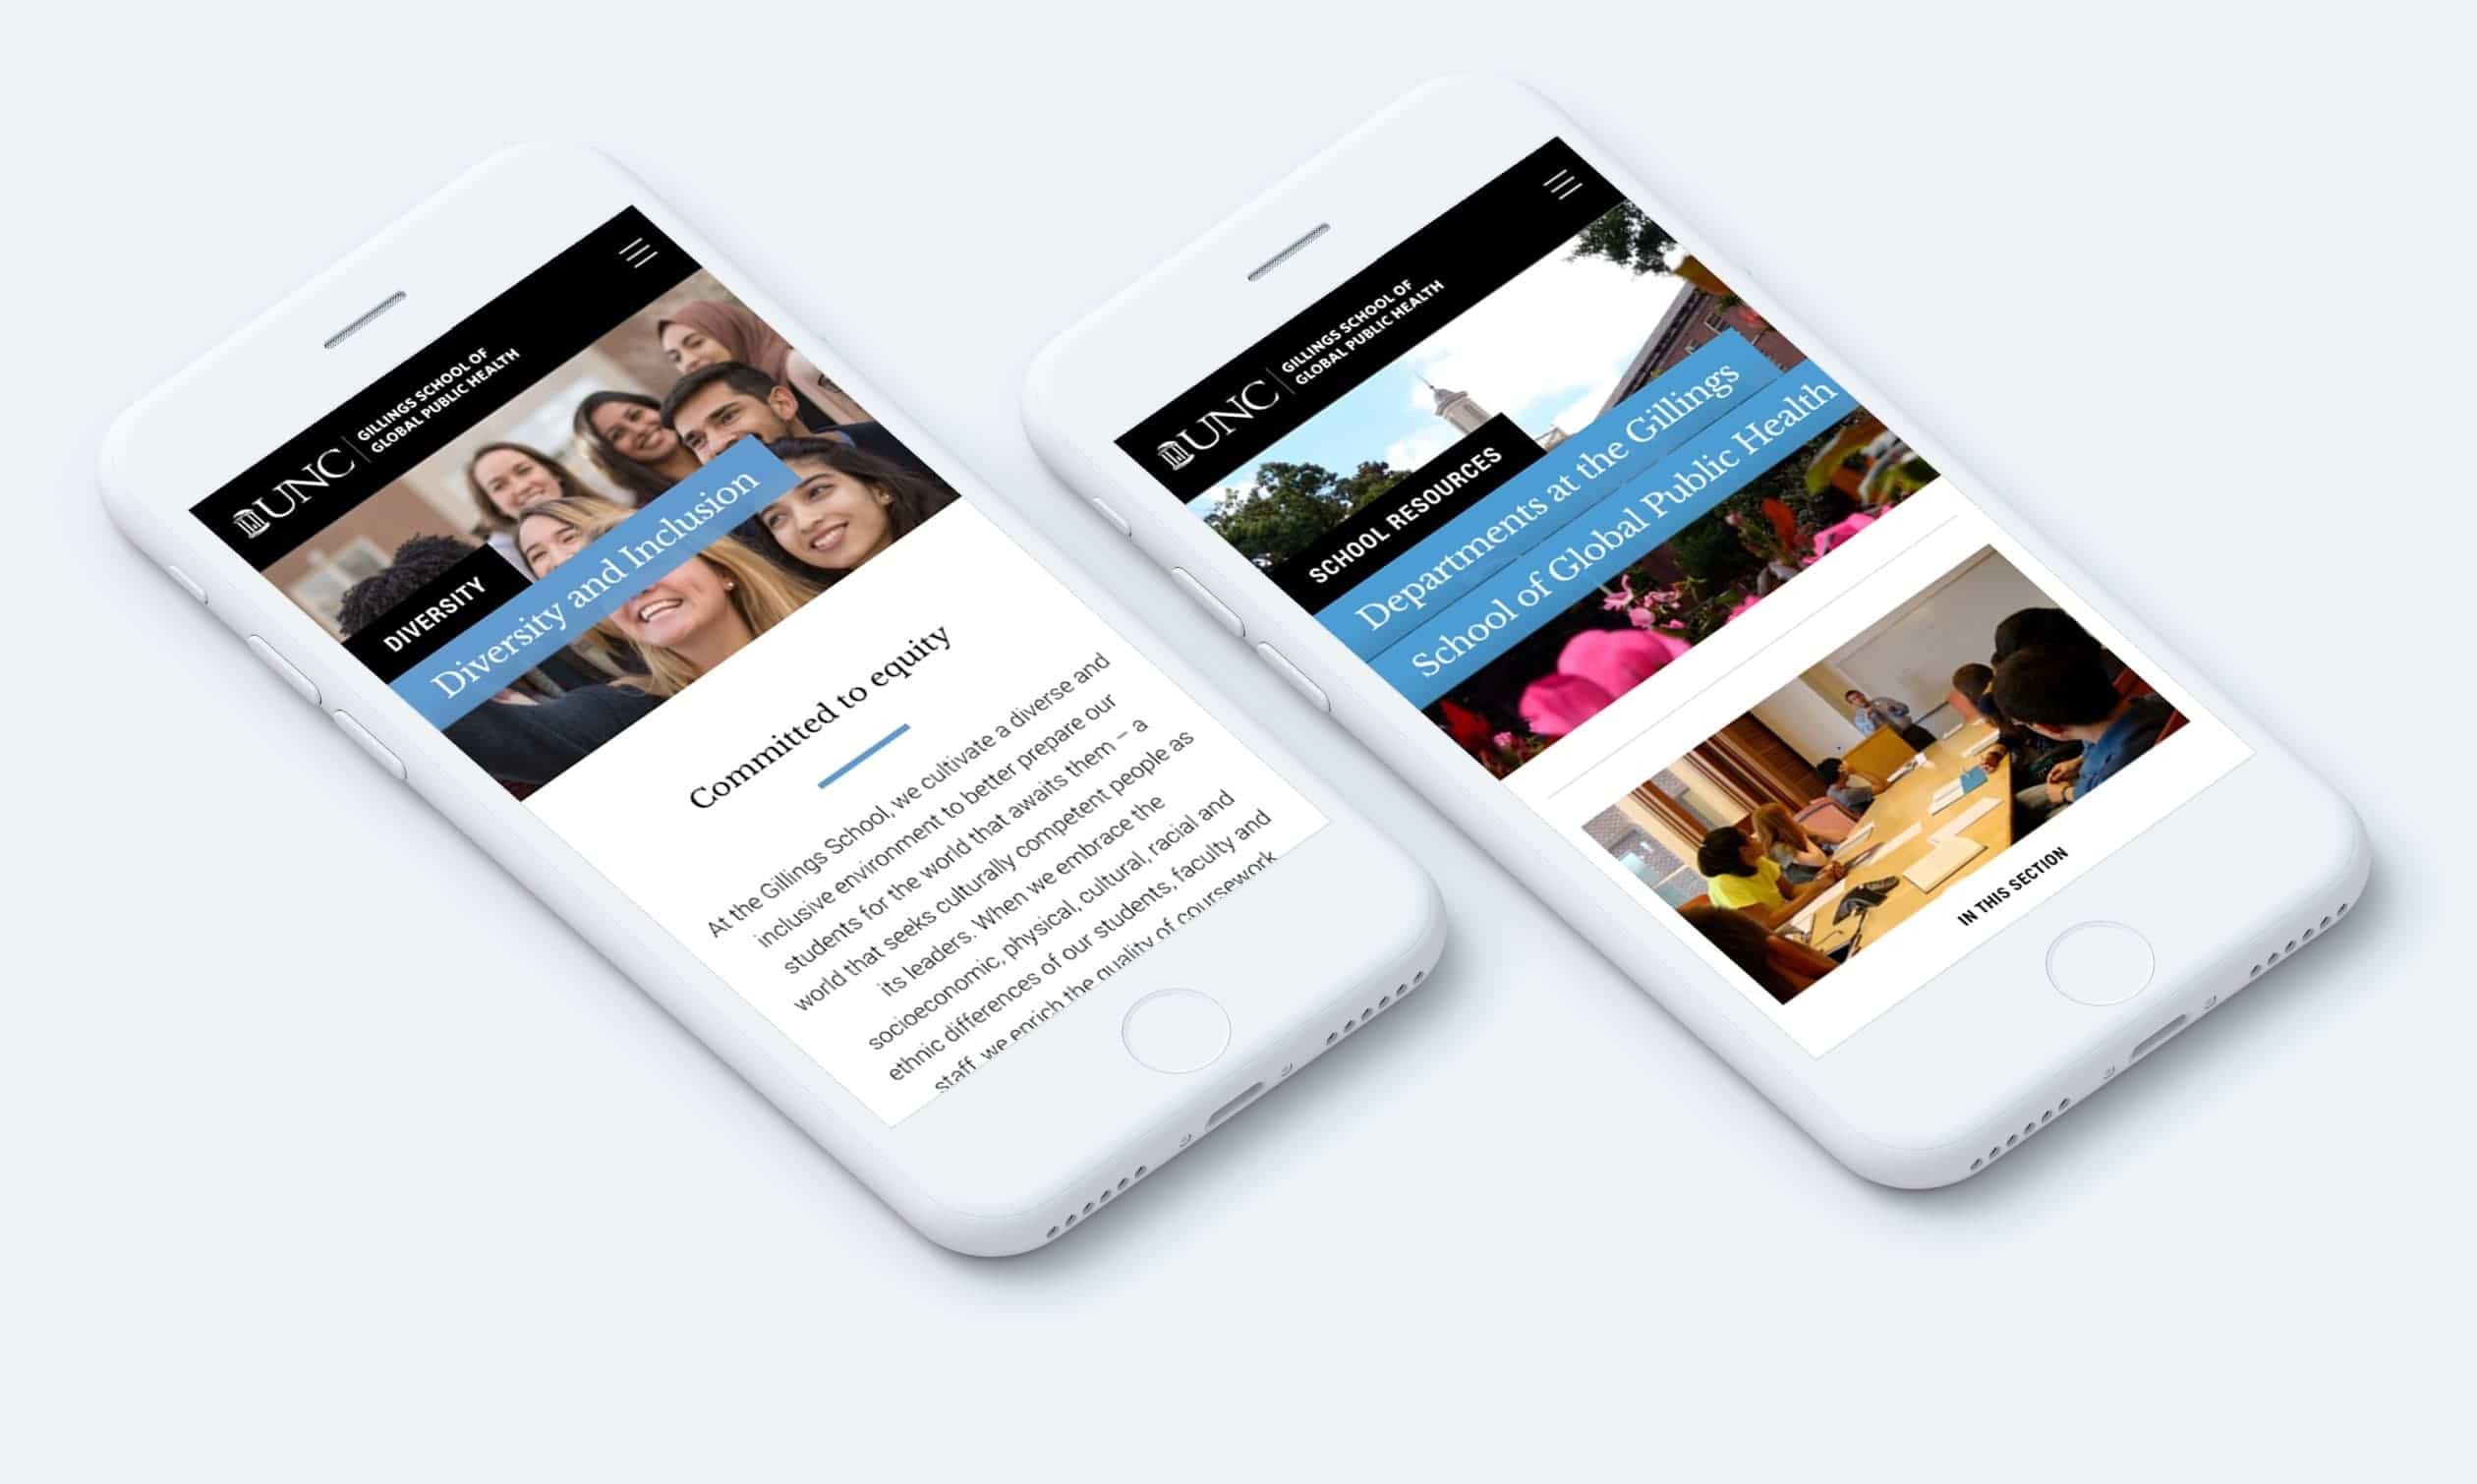 UNC Gillings School responsive website on mobile phones